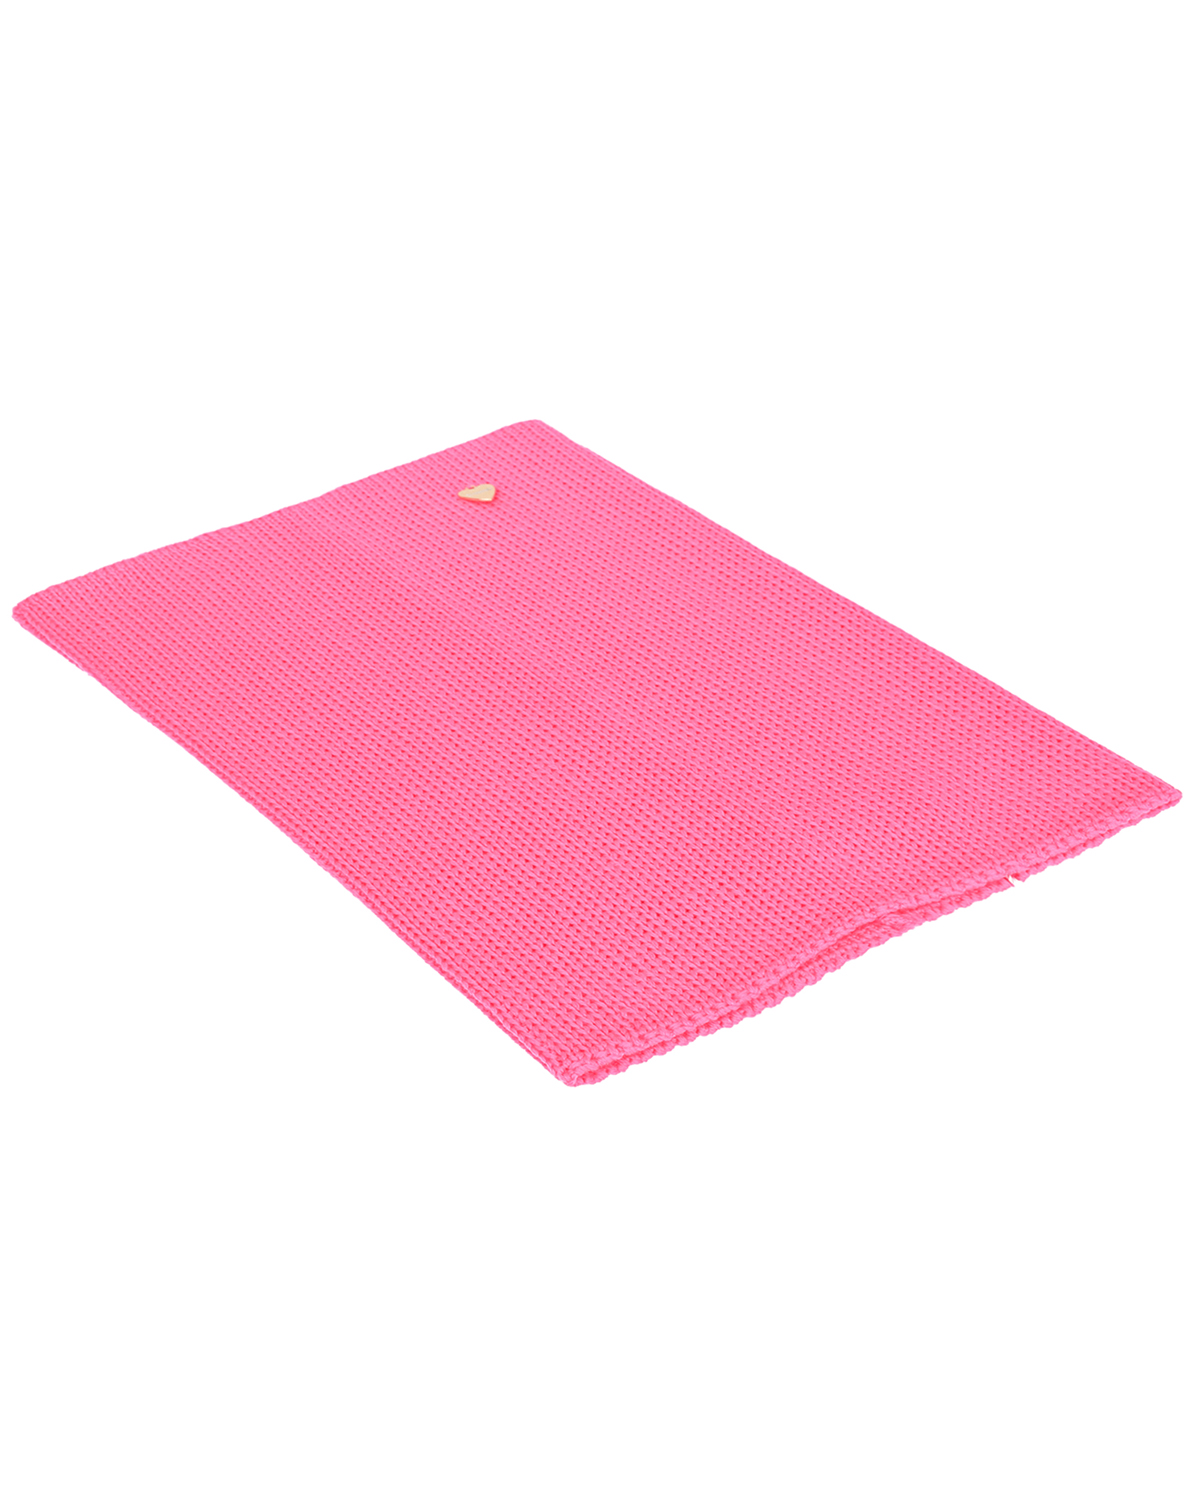 Розовый шарф-ворот из шерсти, 23х33 см Il Trenino детский, размер unica